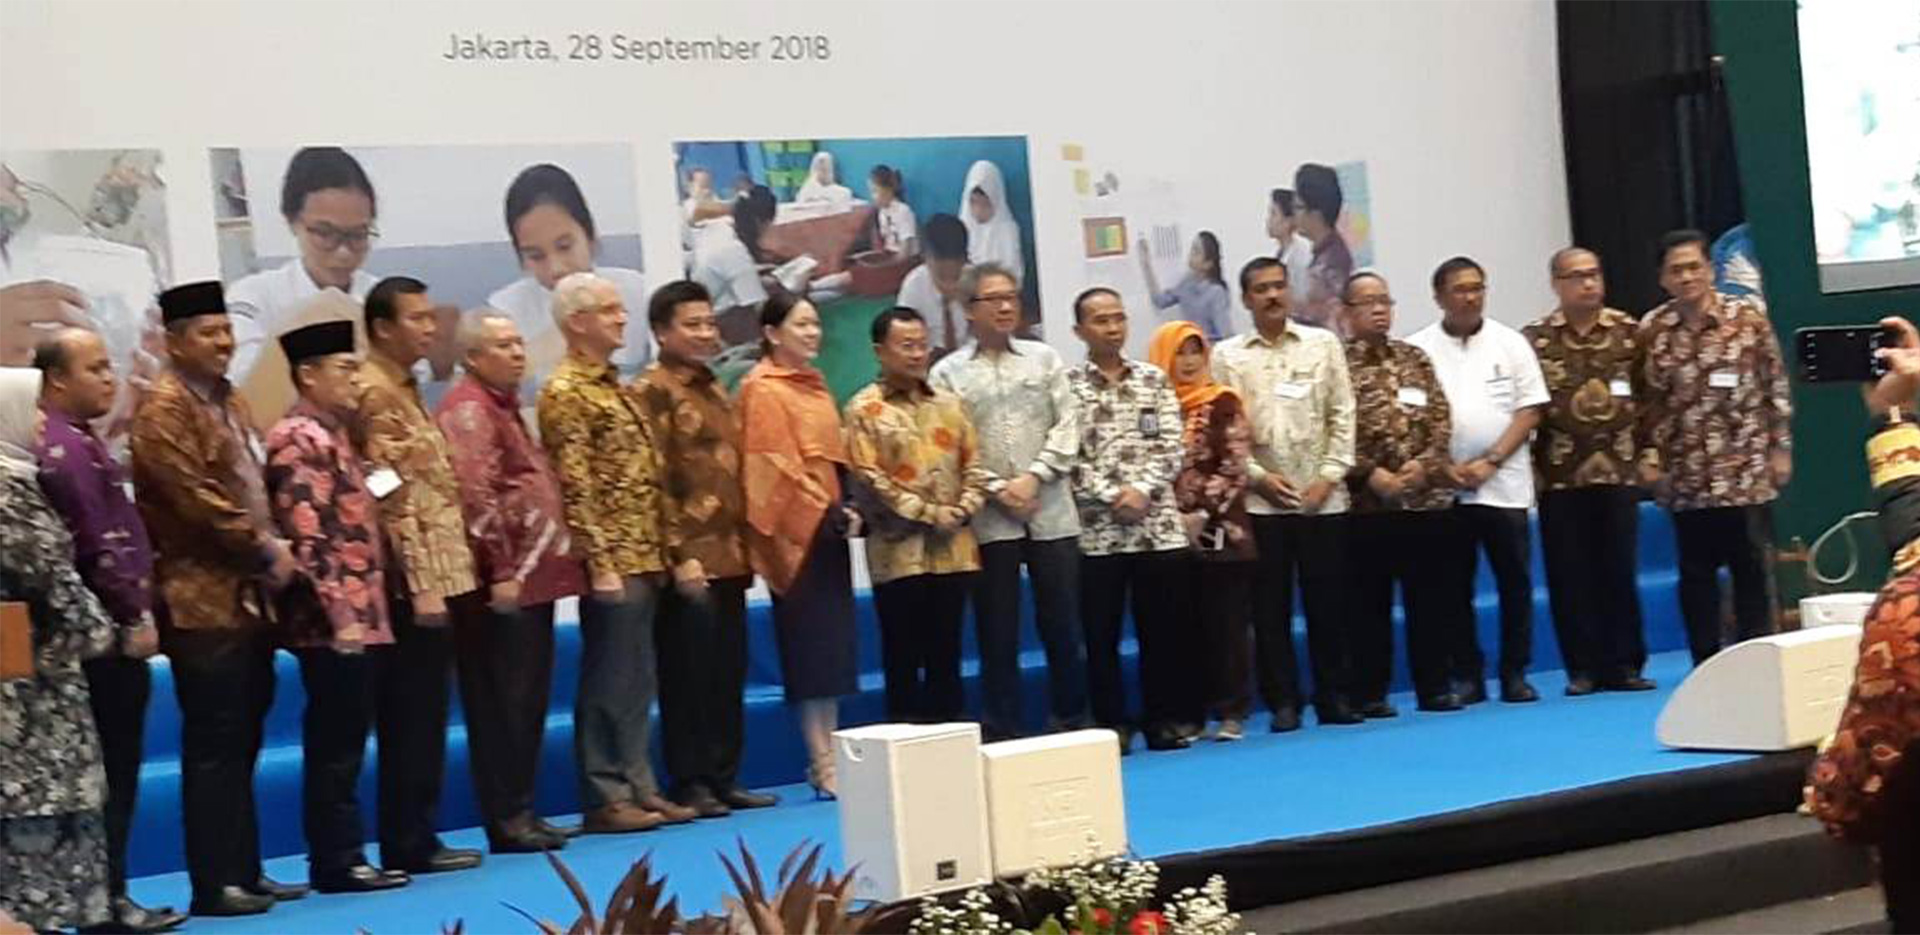 Wakili Bupati, Kadisdik Bengkalis Hadiri Peluncuran Program Pintar di Jakarta